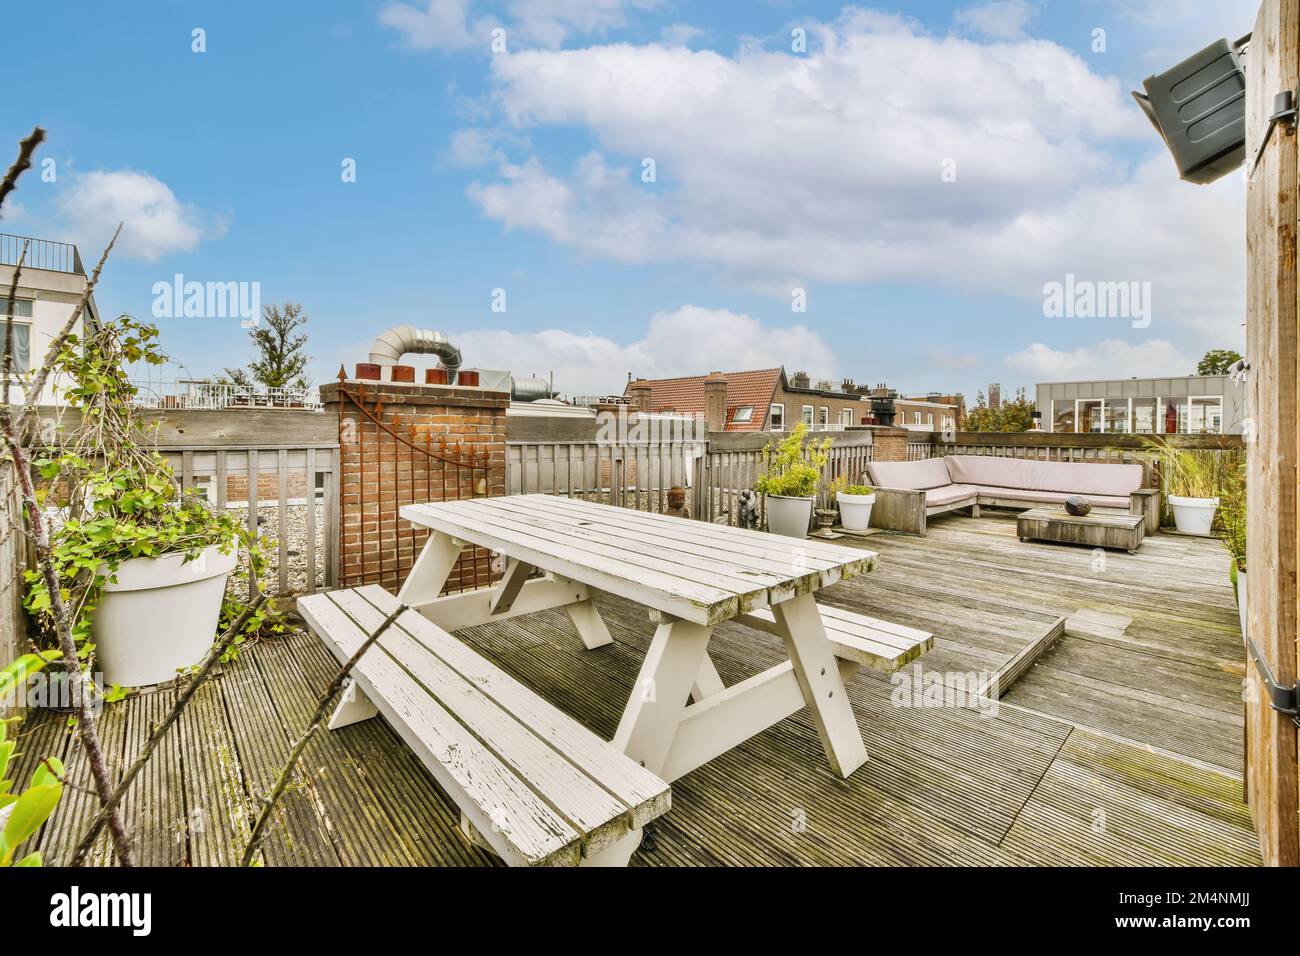 une zone extérieure avec terrasse en bois et tables de pique-nique blanches sur la photo est prise du toit à l'arrière-cour Banque D'Images